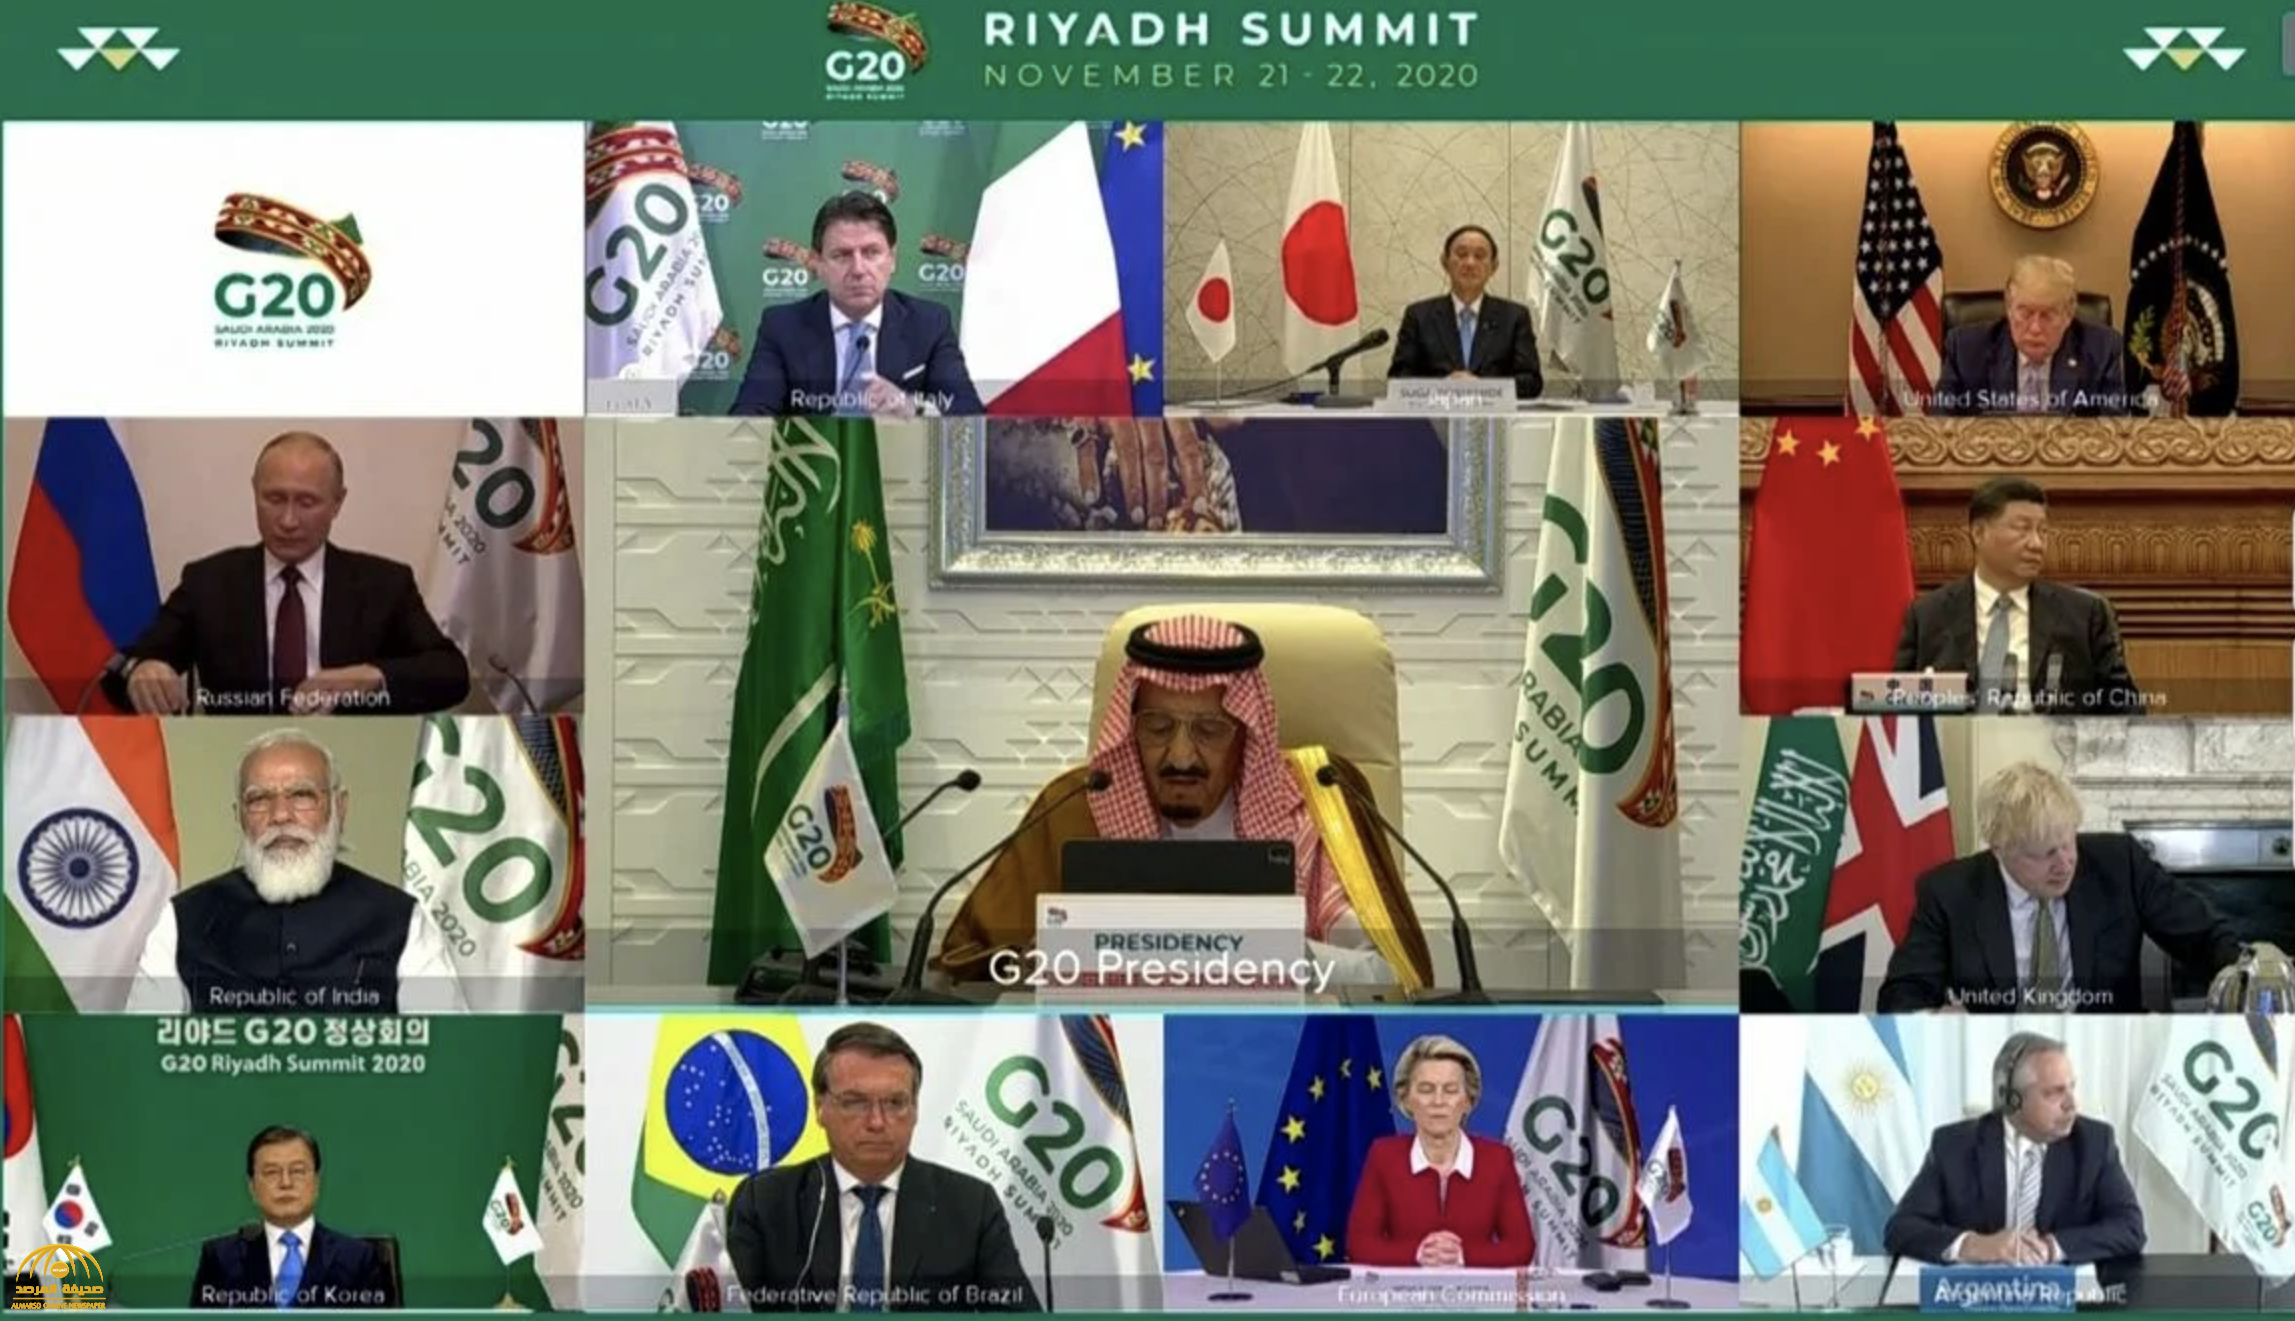 شاهد الصورة الجماعية لقادة أهم رؤساء العالم في قمة العشرين يتوسطهم الملك سلمان